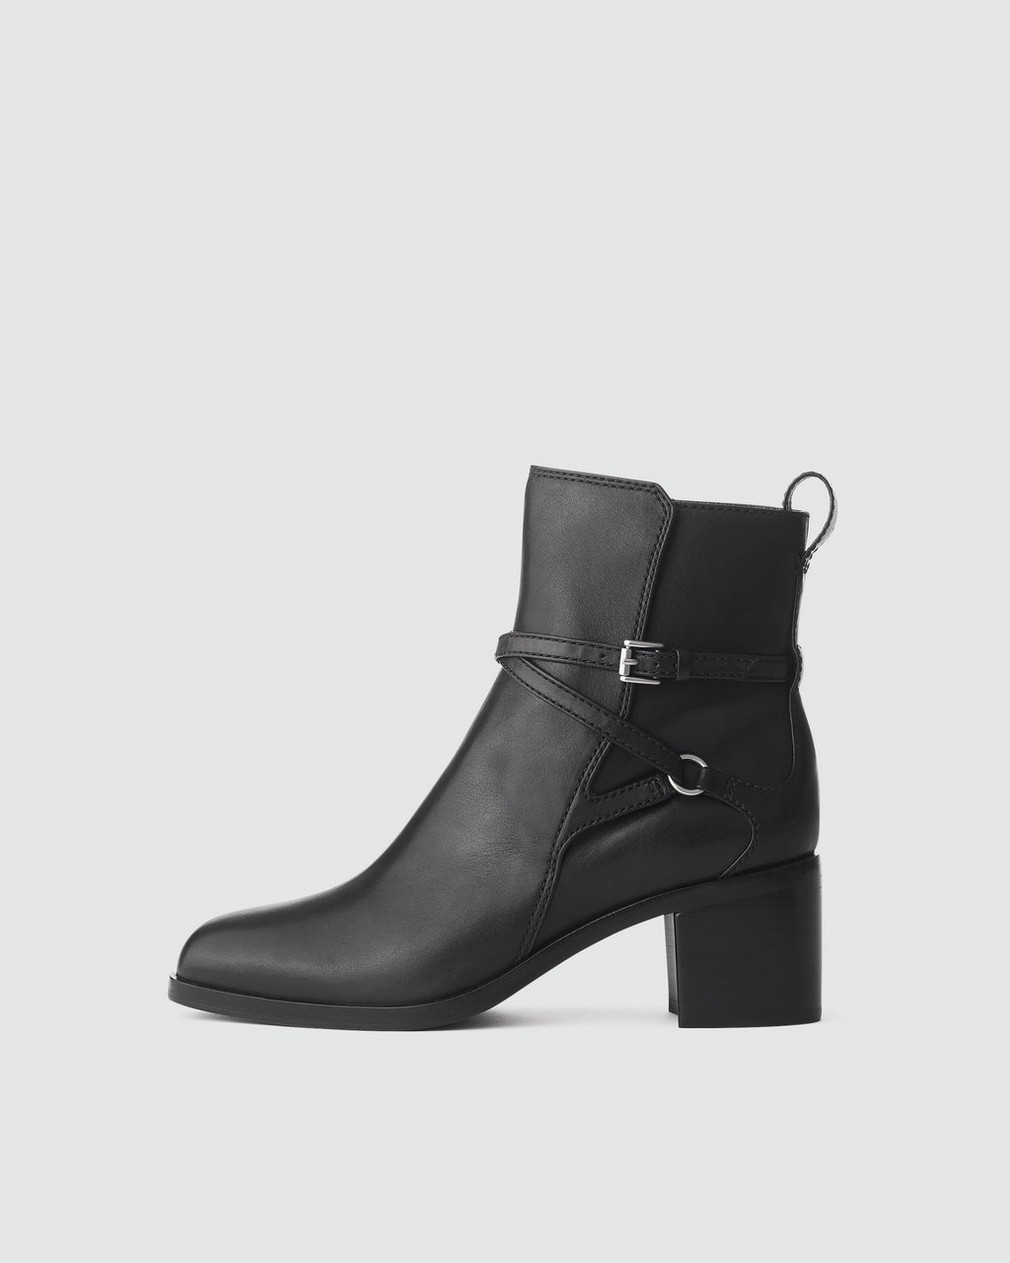 Hazel Buckle Boot - Leather